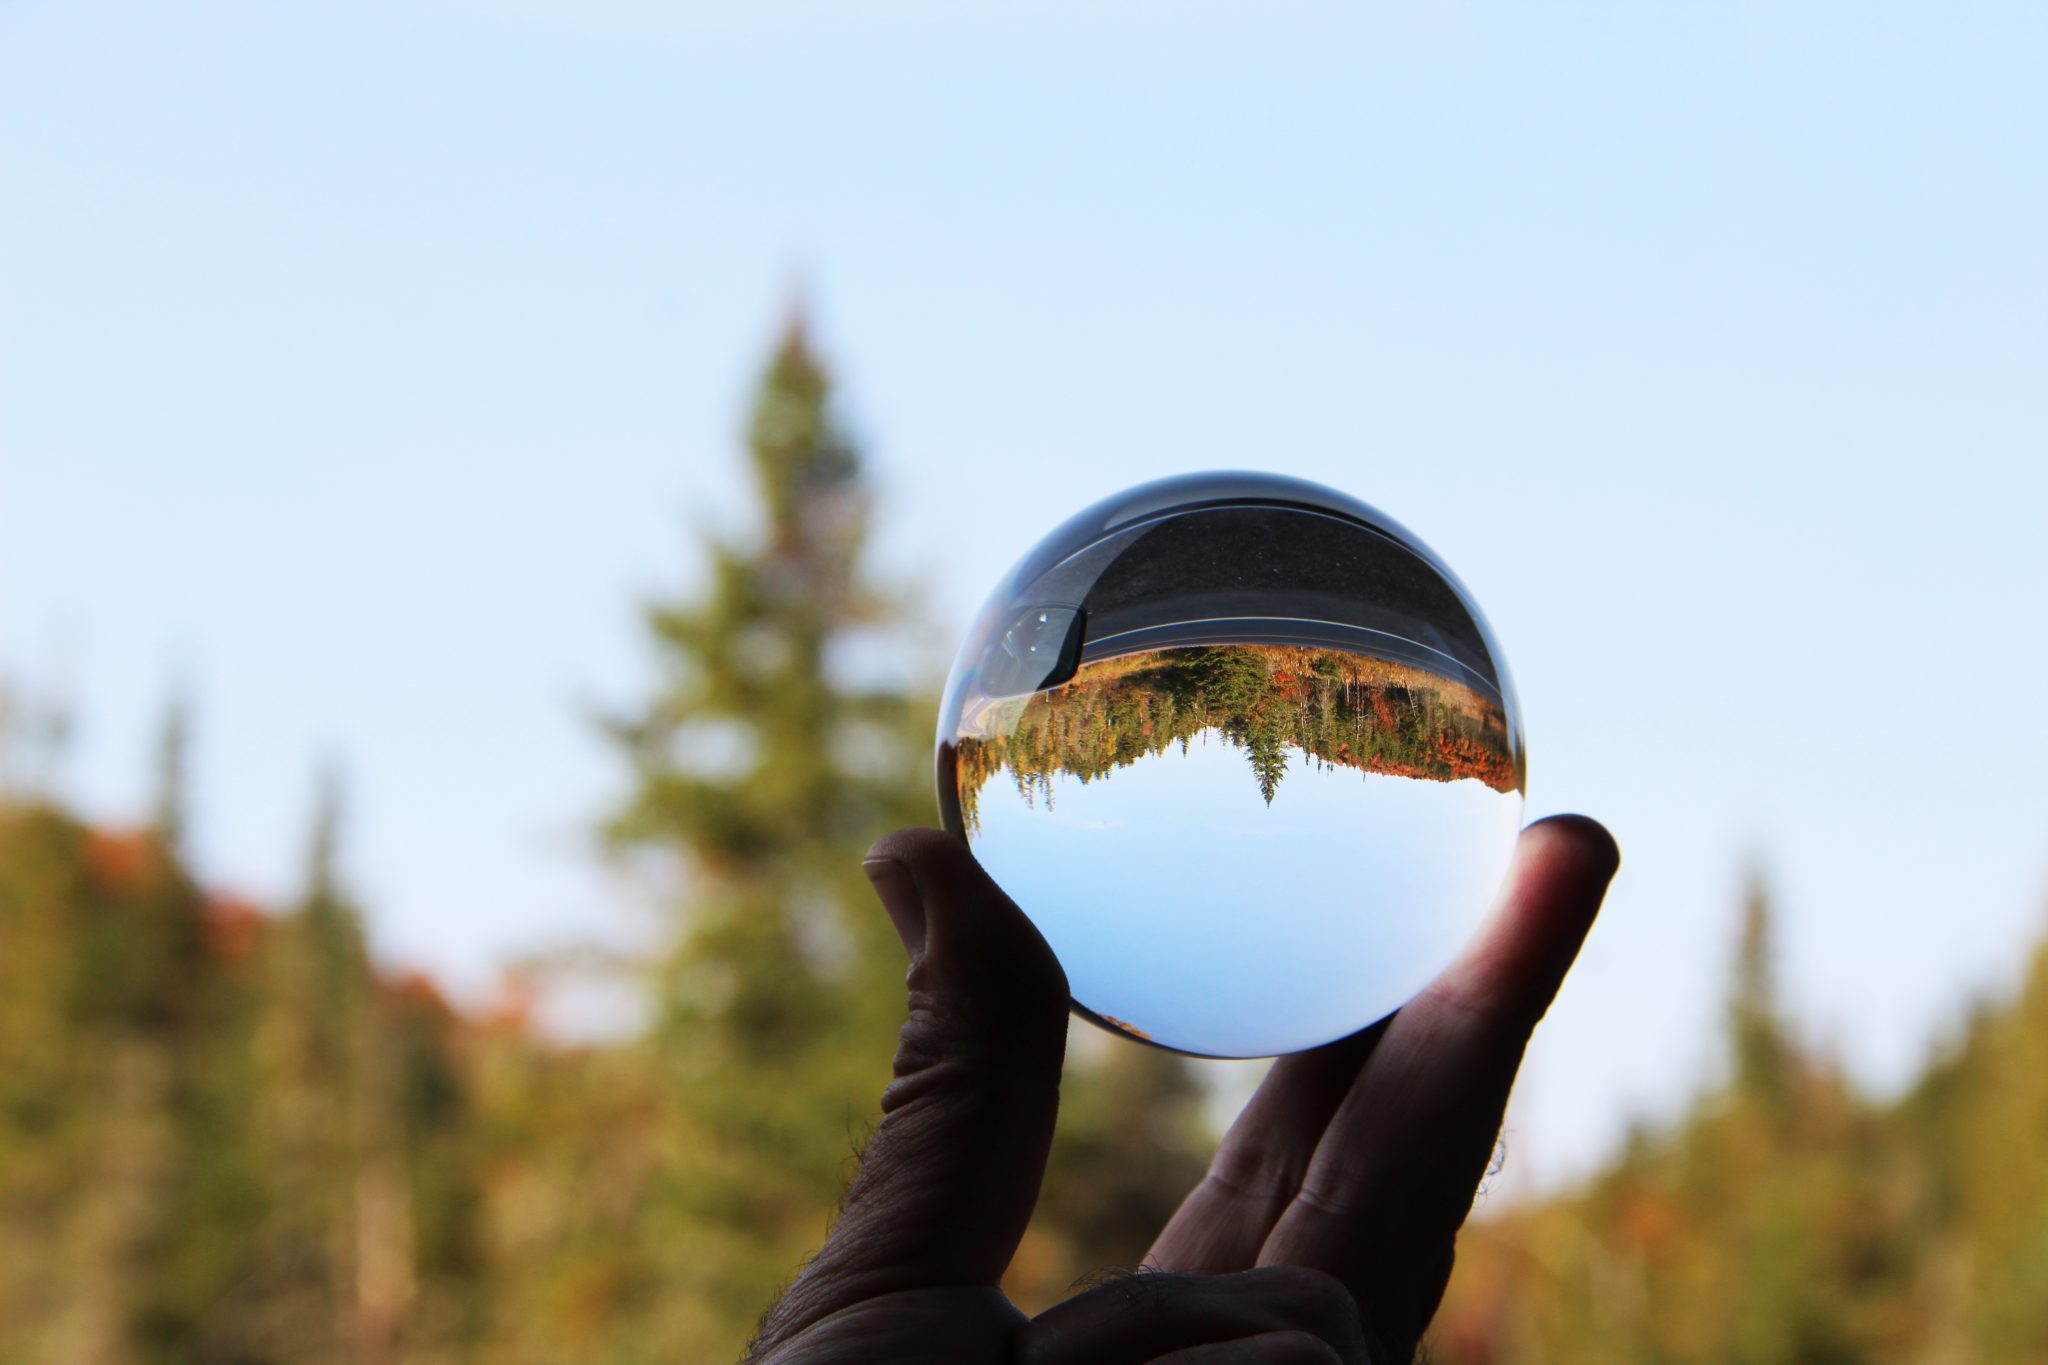 The Adirondack Mountains reflected through a lens ball.